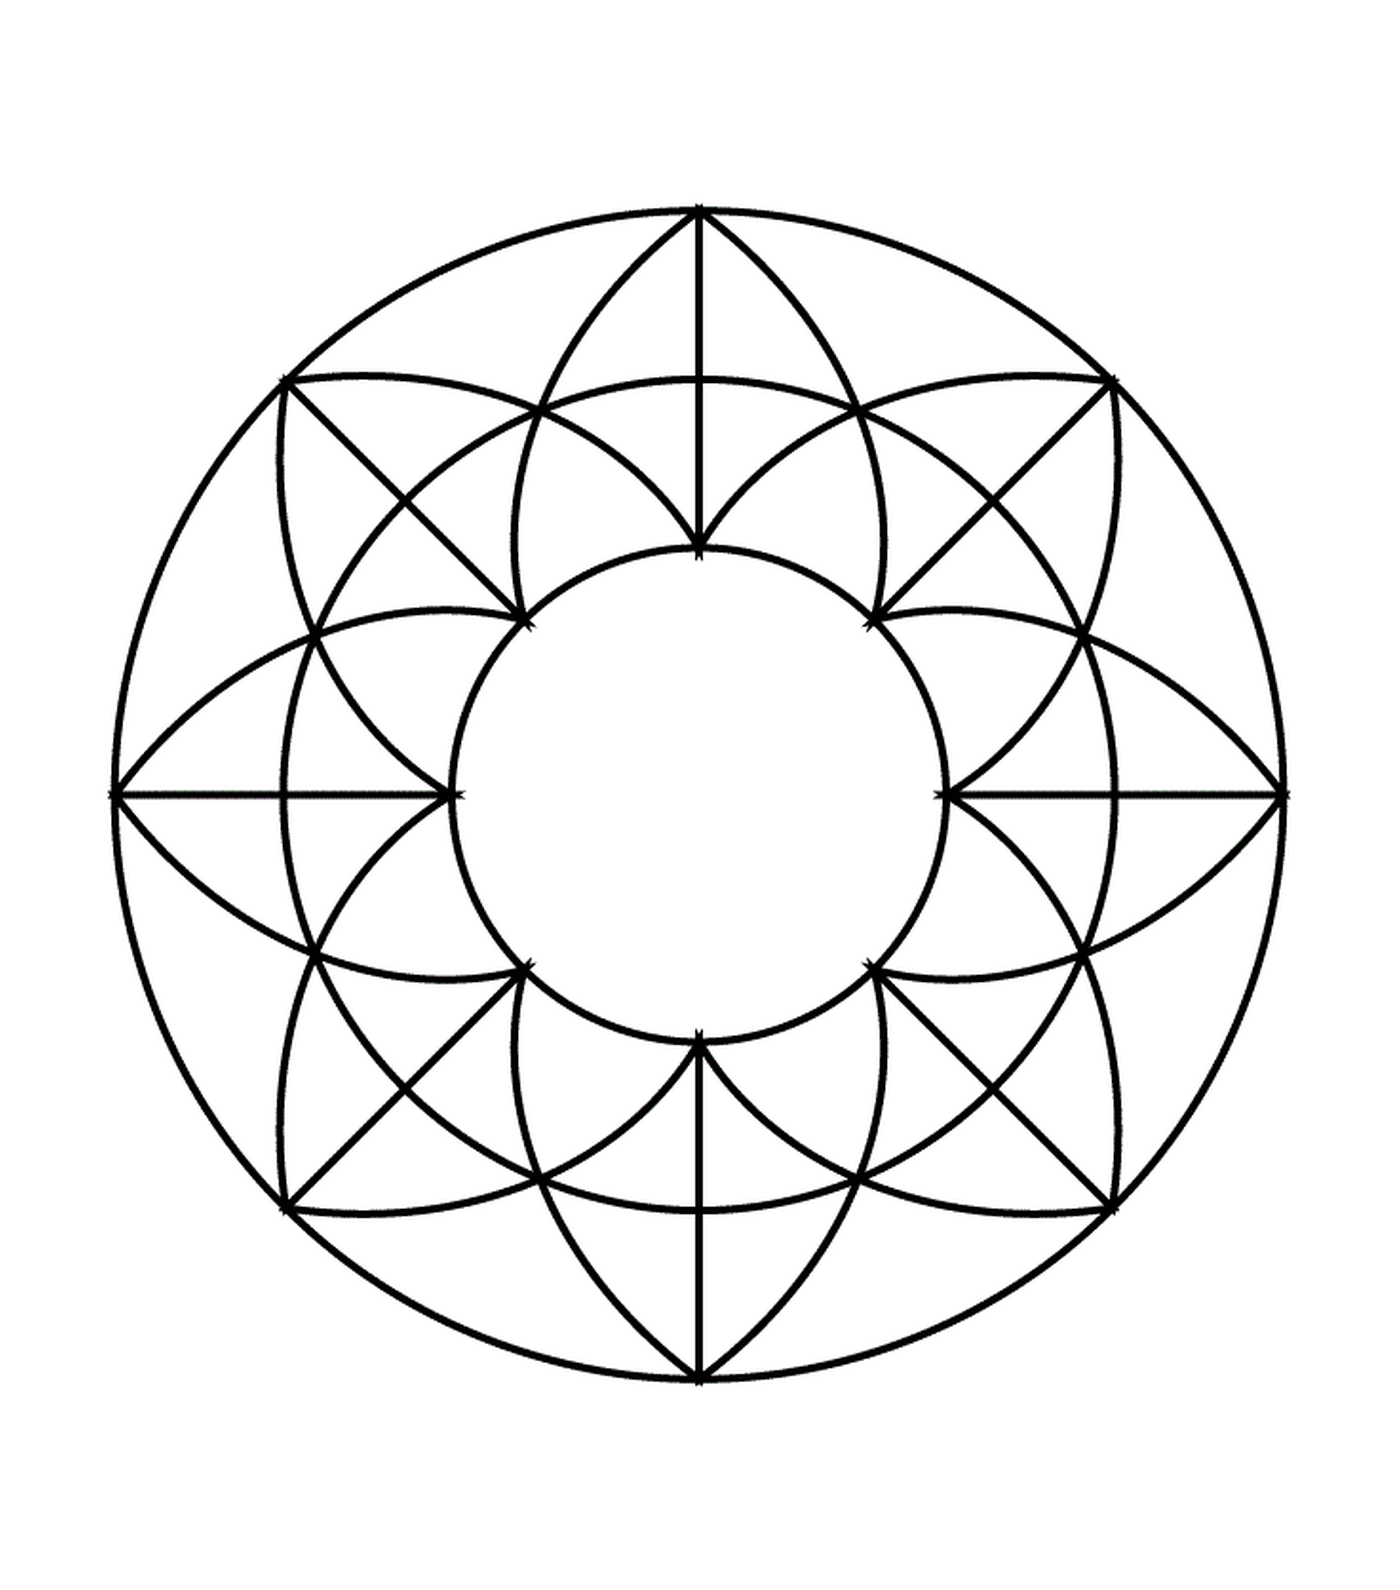  Un círculo con un patrón geométrico en el interior 